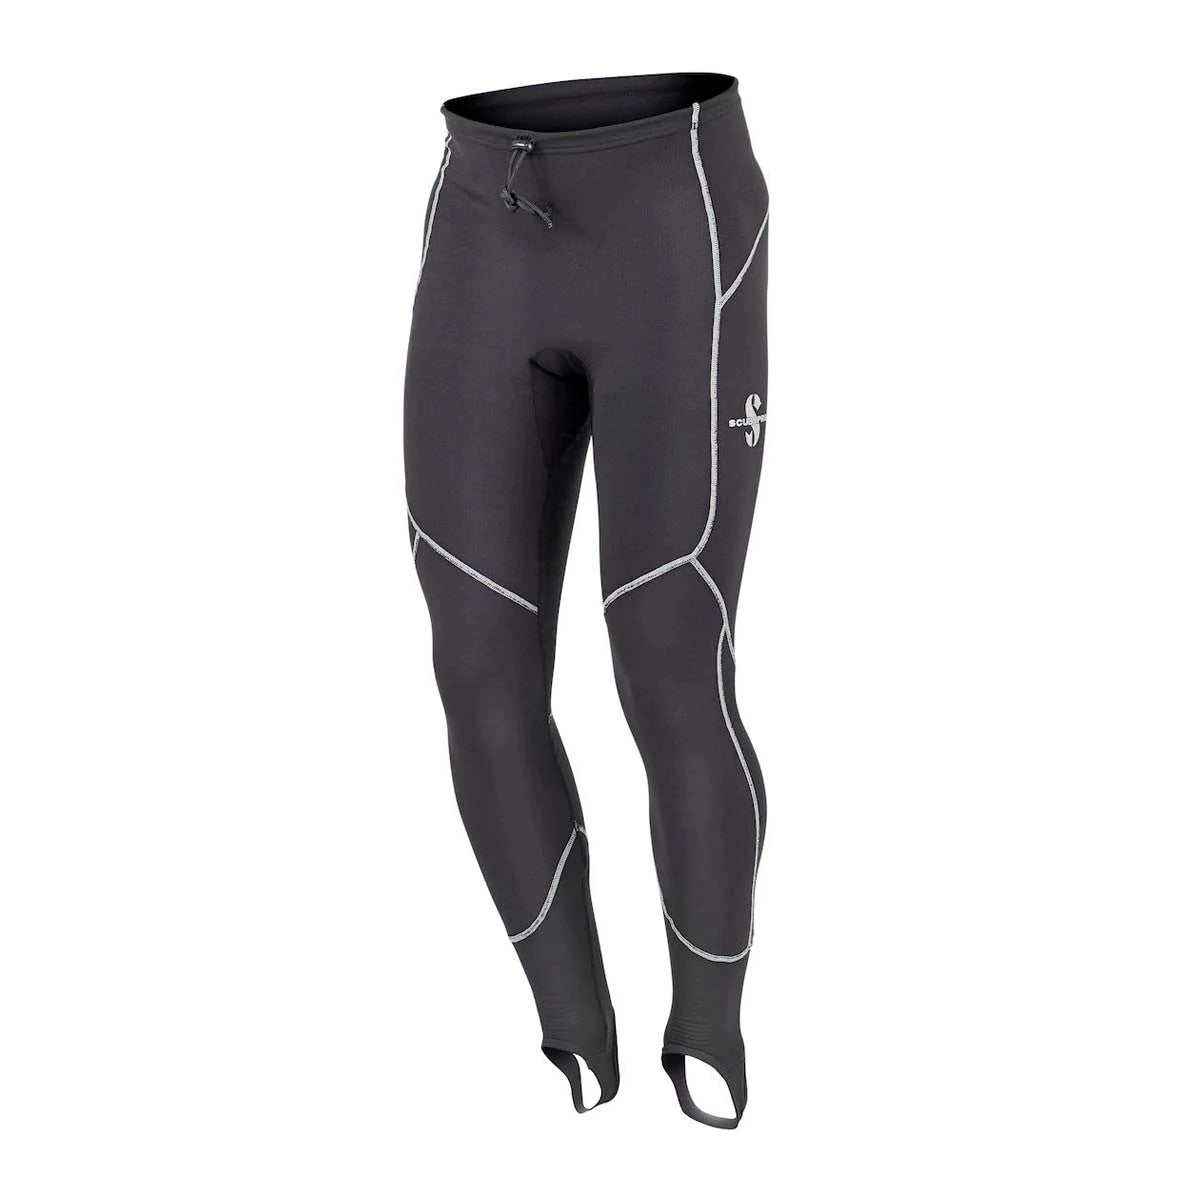 Used ScubaPro K2 Light Pant Undergarment - Mens